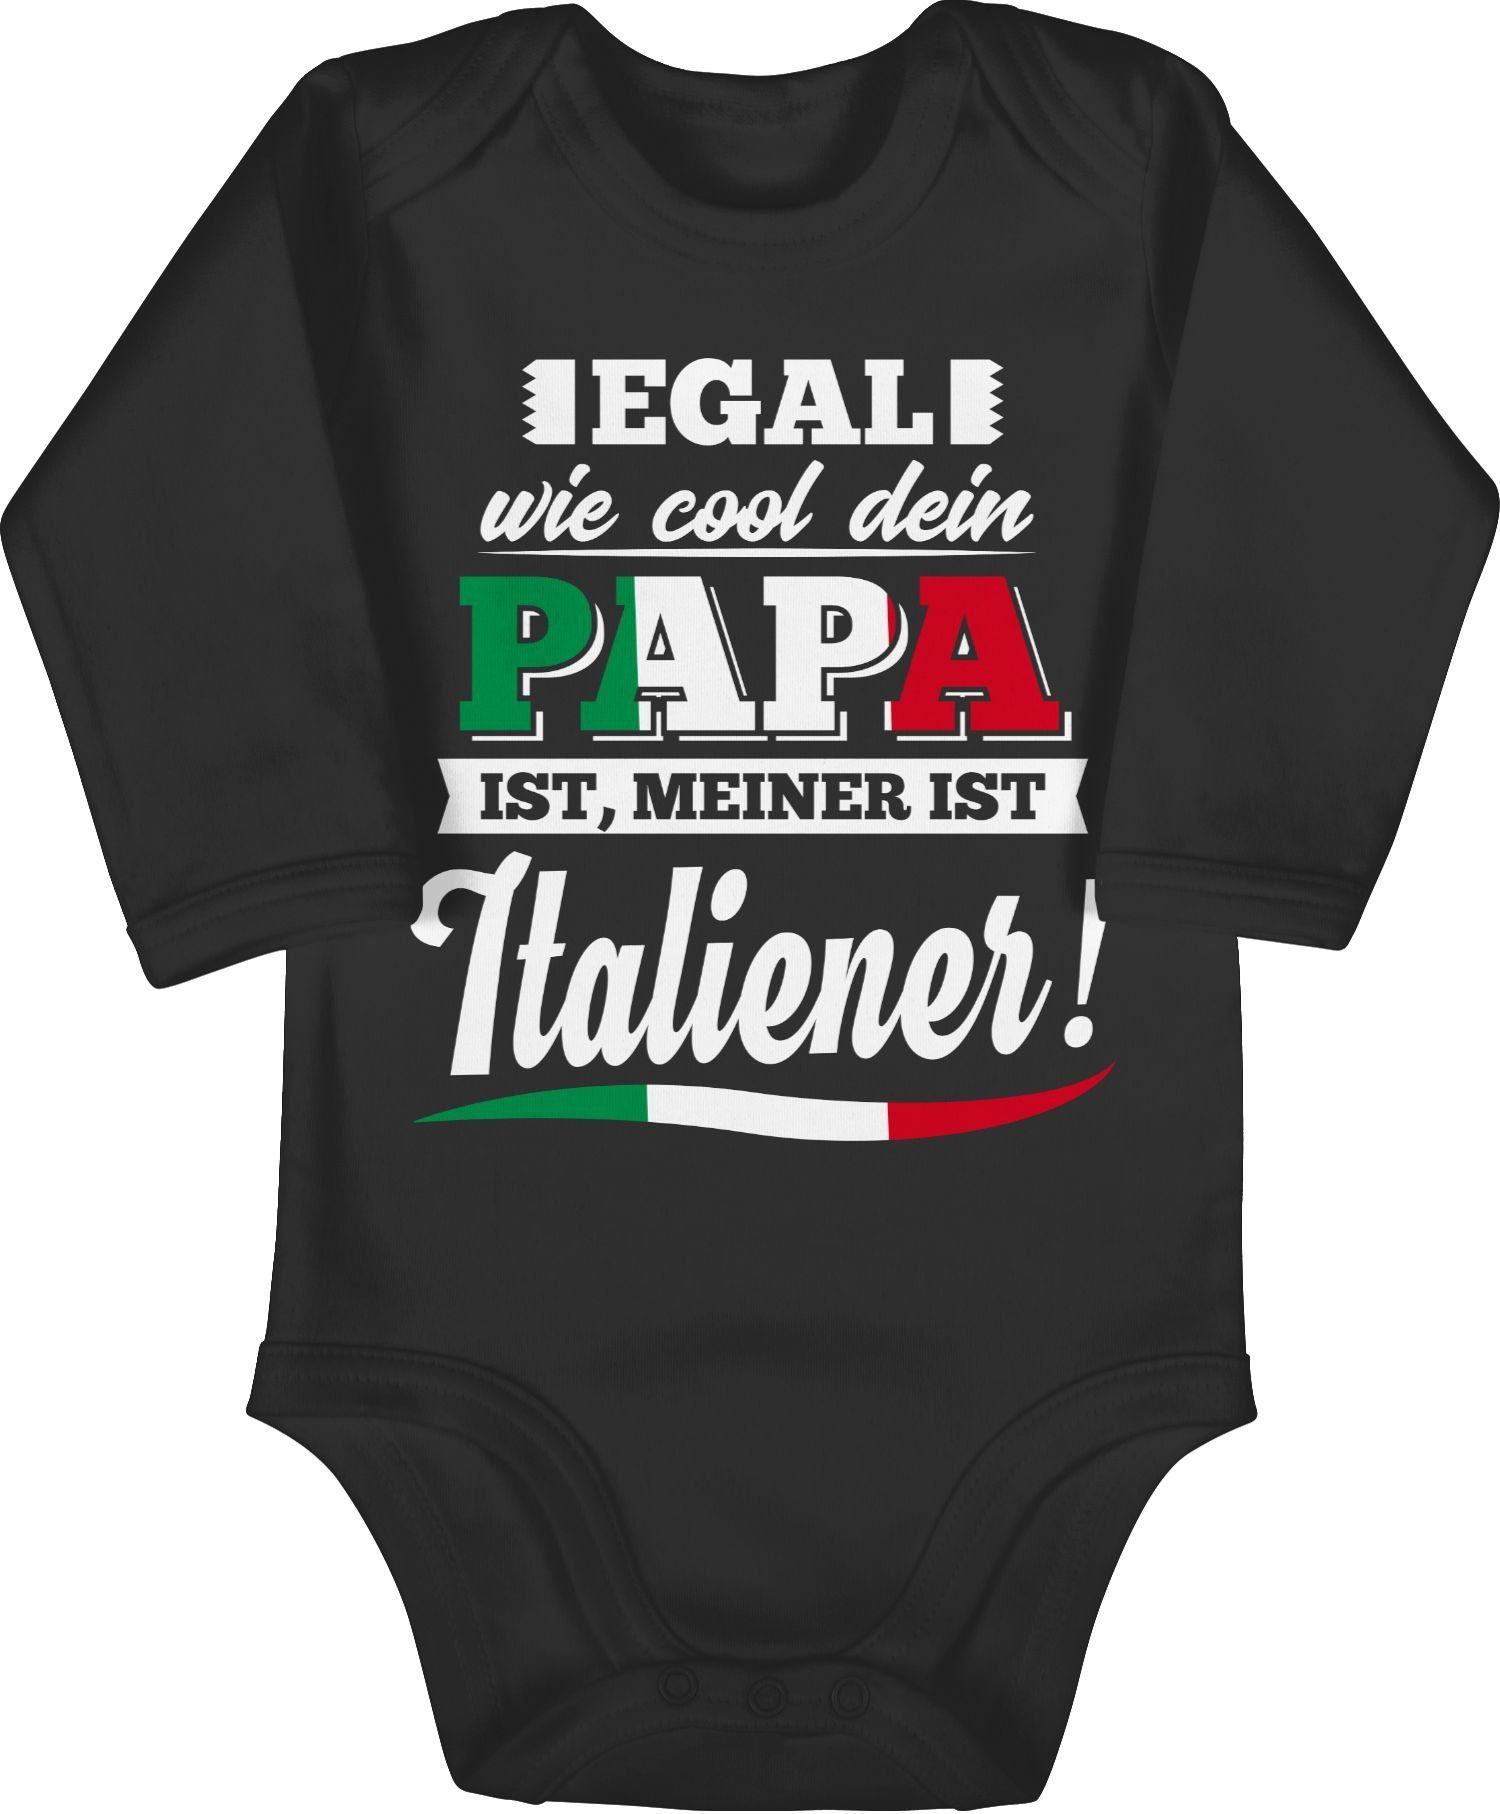 Shirtracer Shirtbody Egal wie Cool dein Papa meiner ist Italiener Sprüche Baby 1 Schwarz